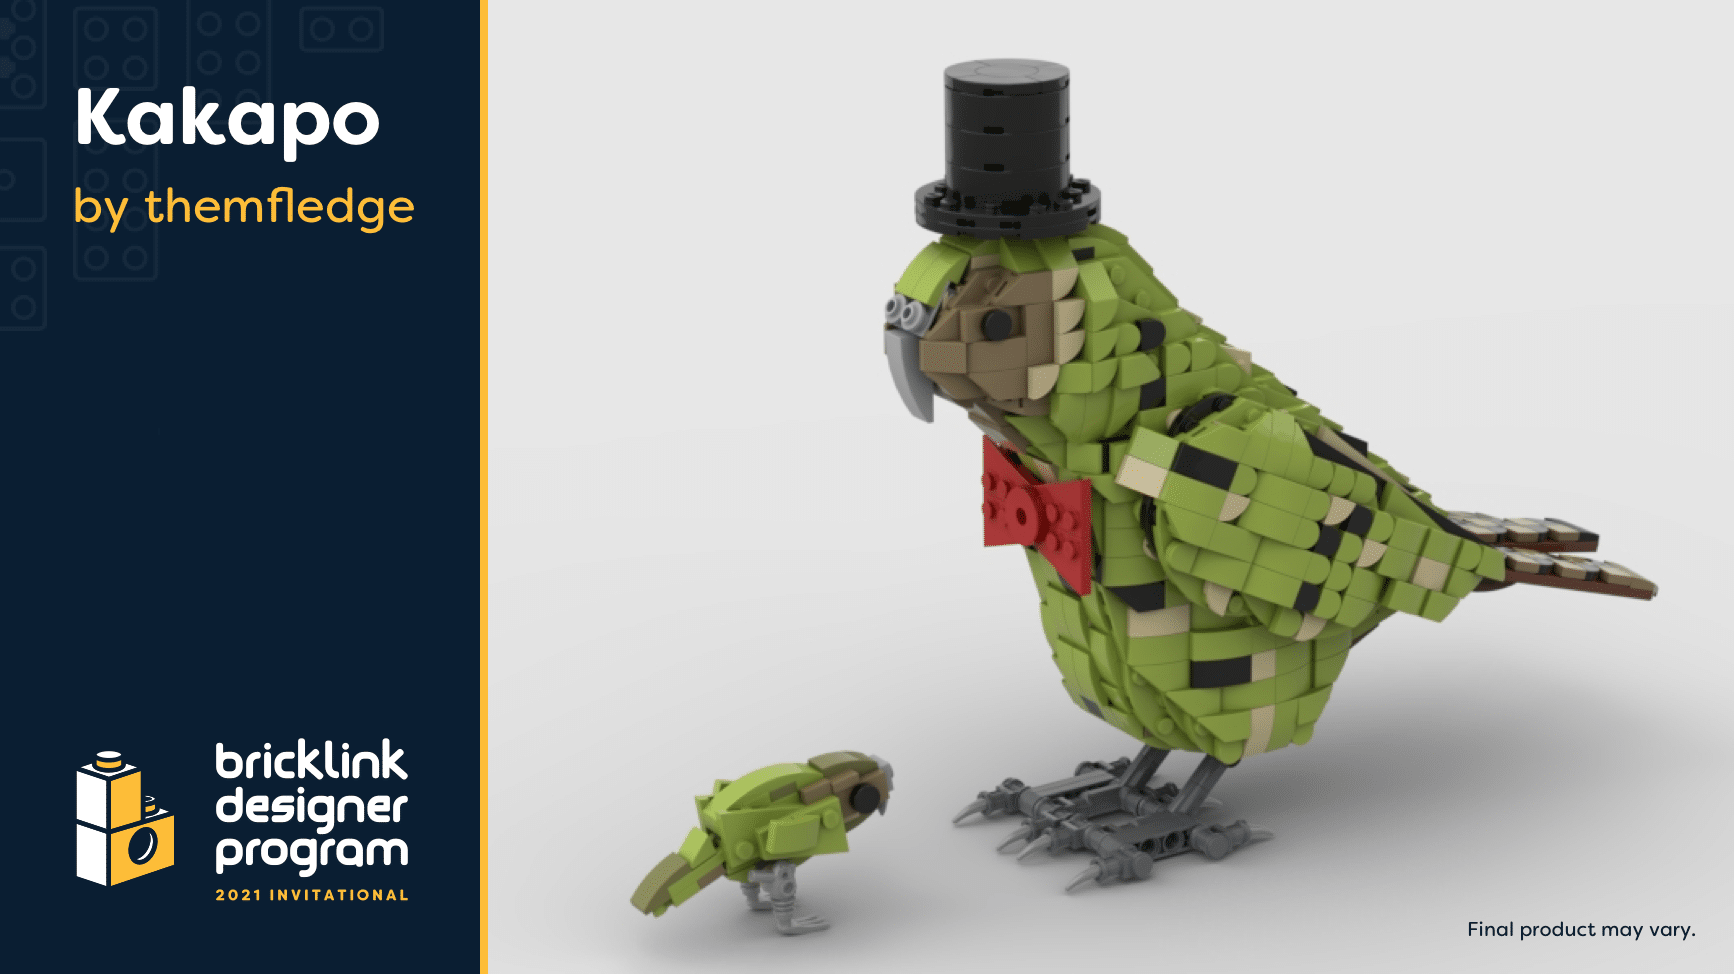 Bricklink Designer Program 2021 Kakapo